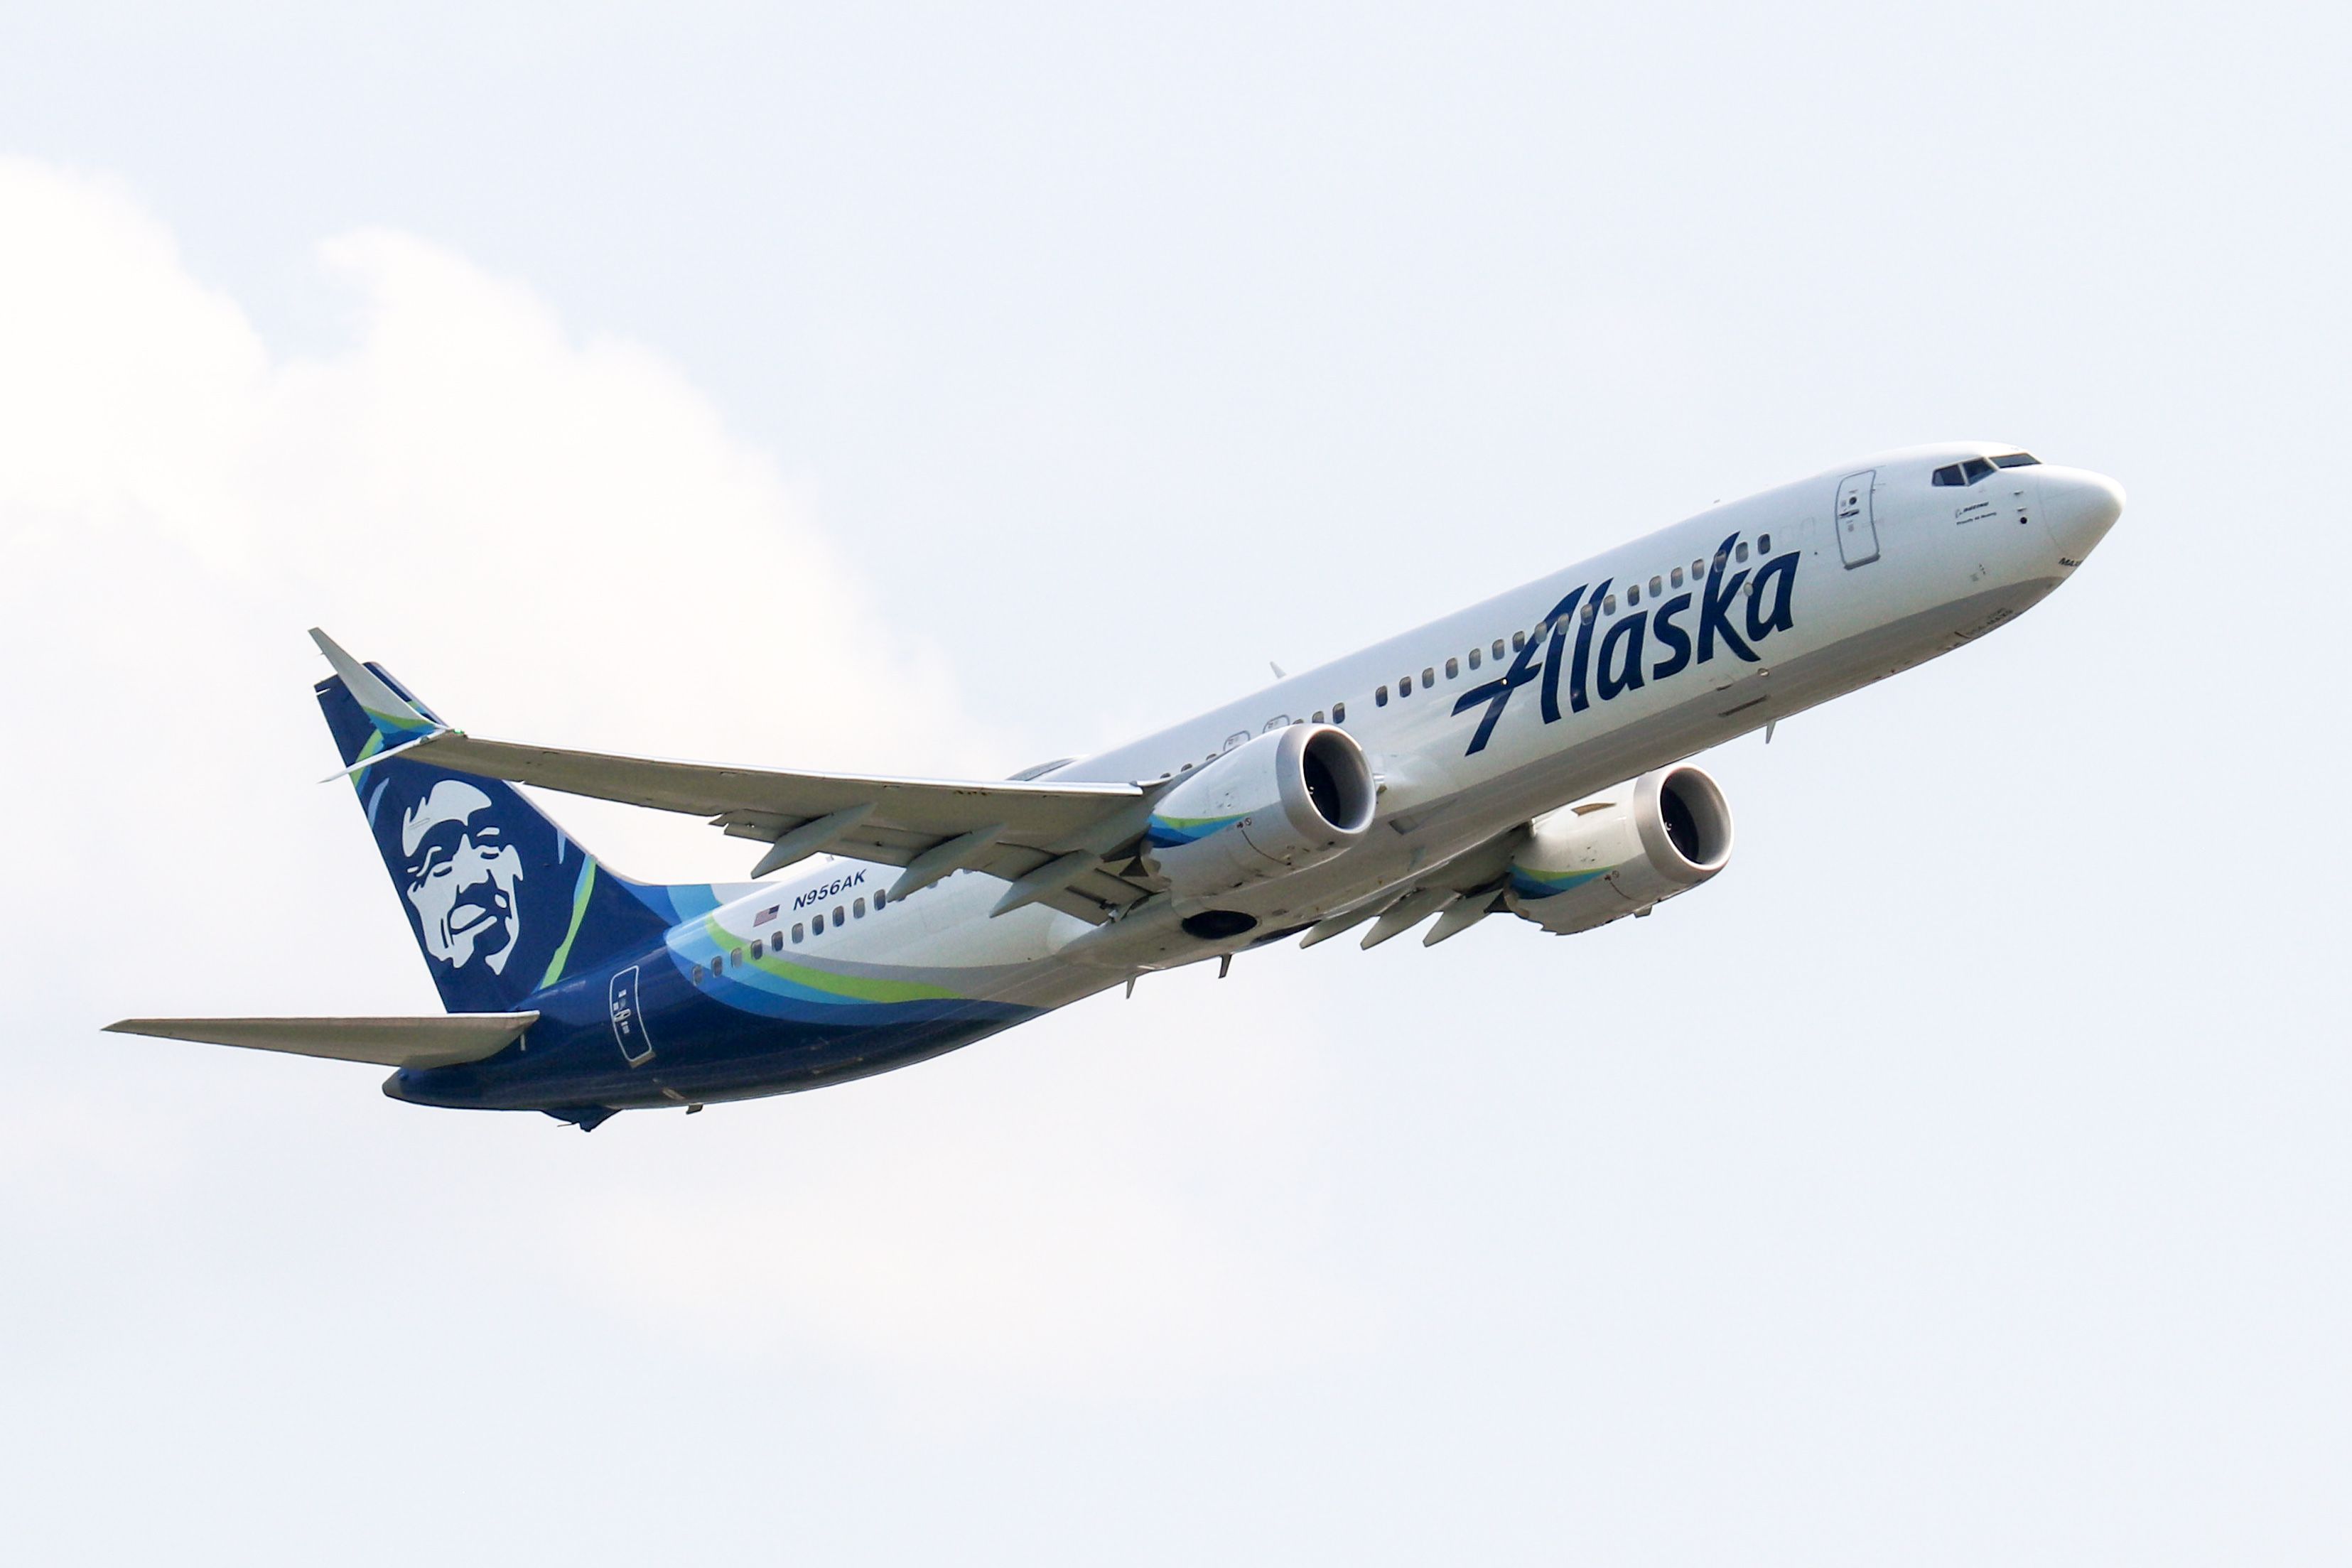 Alaska Airlines 737 Max 9 departing BOS - N956AK - 4x6